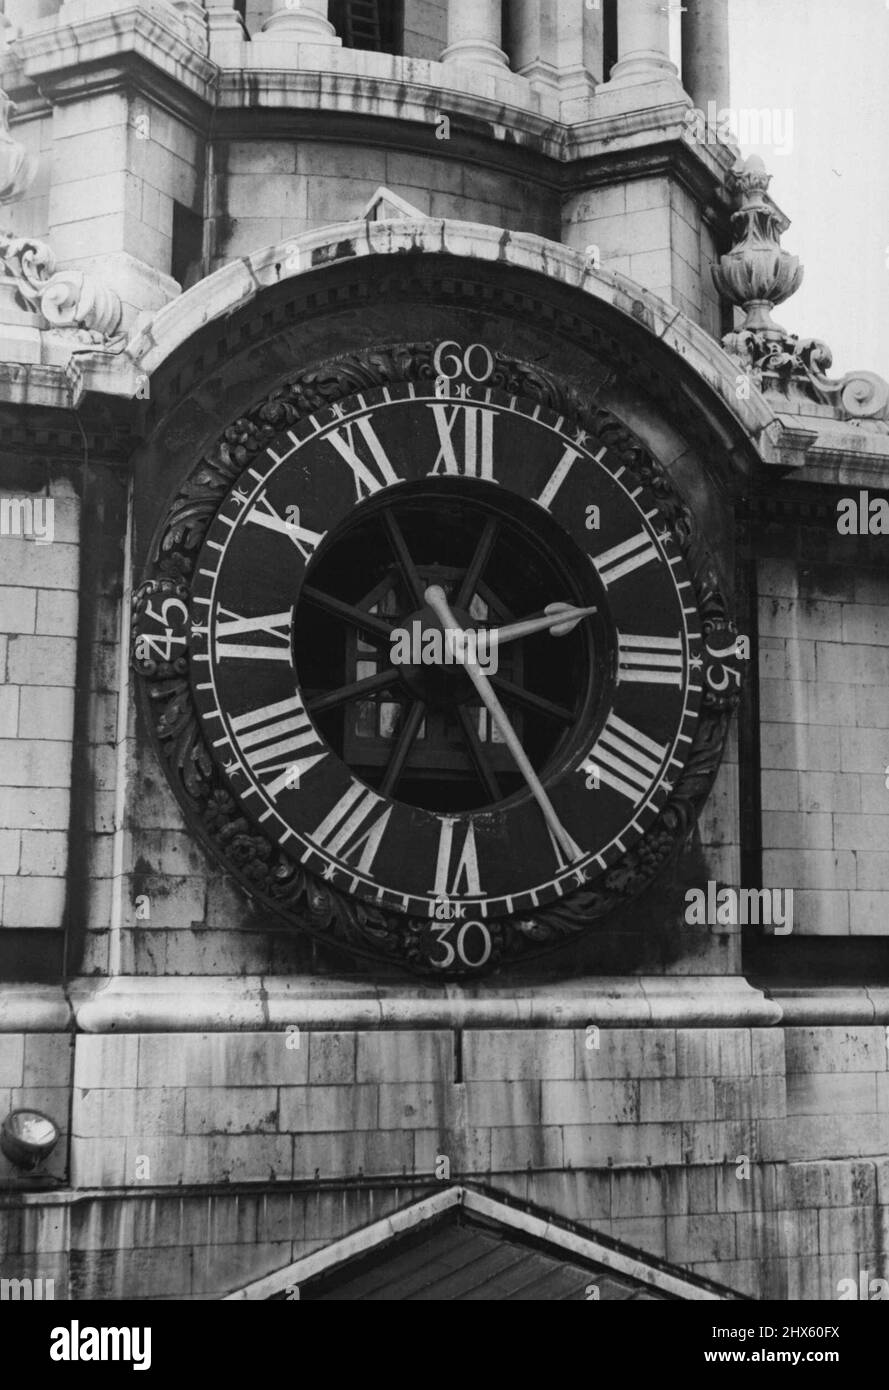 L'horloge Saint-Paul est en cours de réparation et offre une vue extérieure sur la face de l'horloge de la cathédrale Saint-Paul. L'horloge de la cathédrale Saint-Paul subit actuellement des réparations, qui sont effectuées par Mlle John Smith et fils de Derby, les fabricants de l'horloge. Cela fait partie des travaux d'entretien réguliers à Saint-Paul, qui comprennent, de façon progressive, l'enroulement et la régulation de l'horloge par un homme du département des travaux de la cathédrale et une inspection mensuelle régulière par des hommes de John Smith's qui effectuent périodiquement Banque D'Images